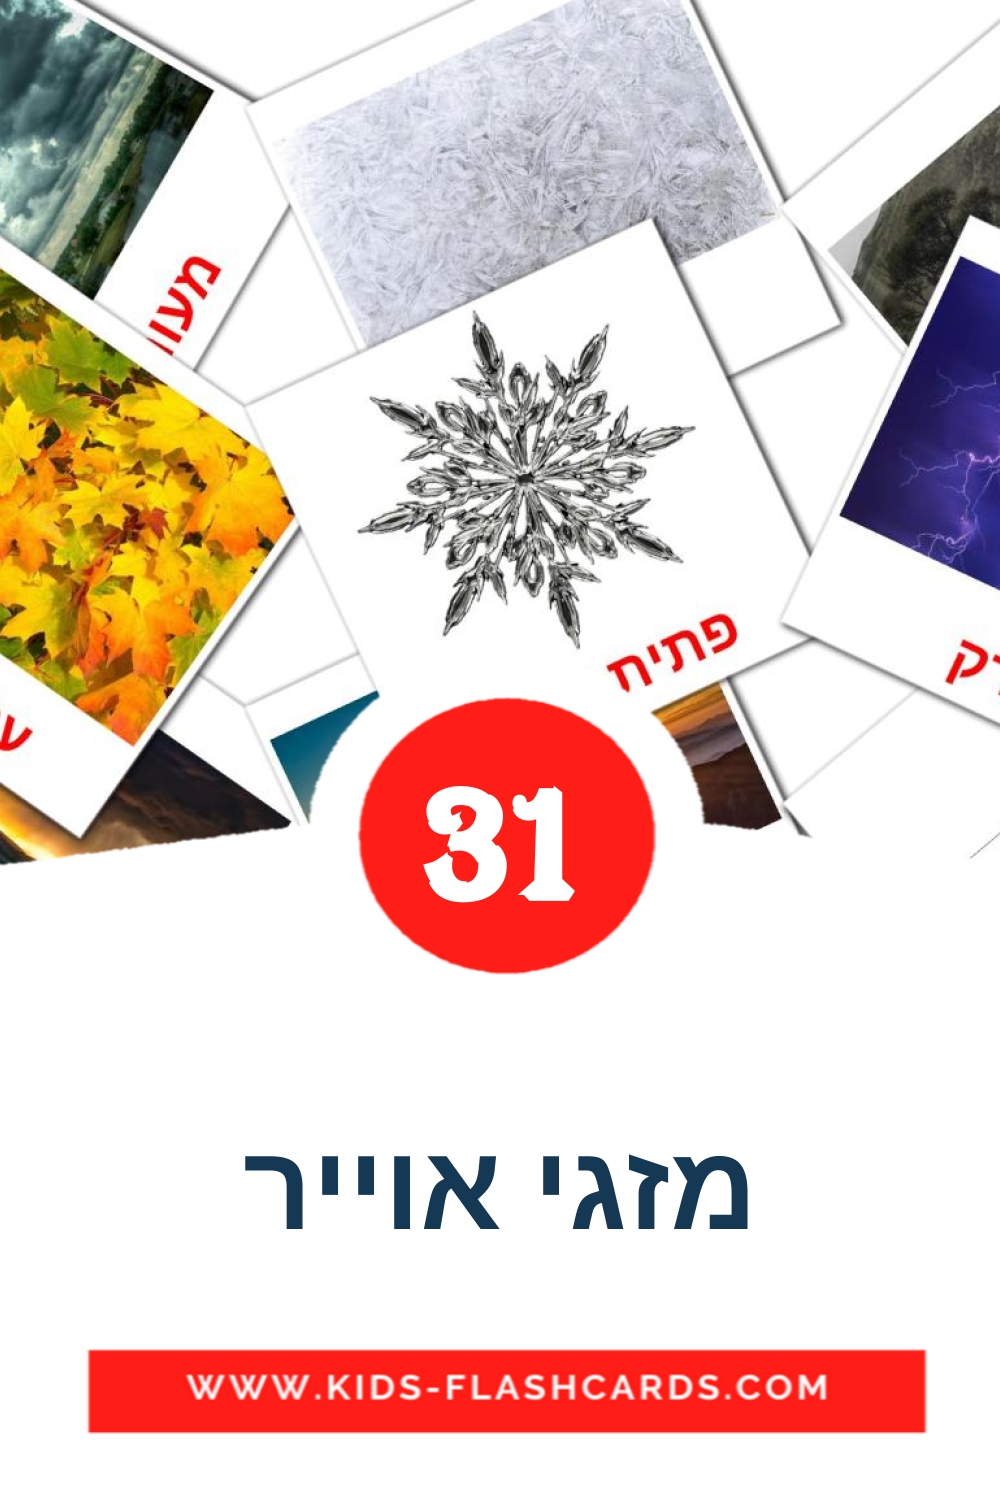 31 tarjetas didacticas de מזגי אוייר para el jardín de infancia en hebreo